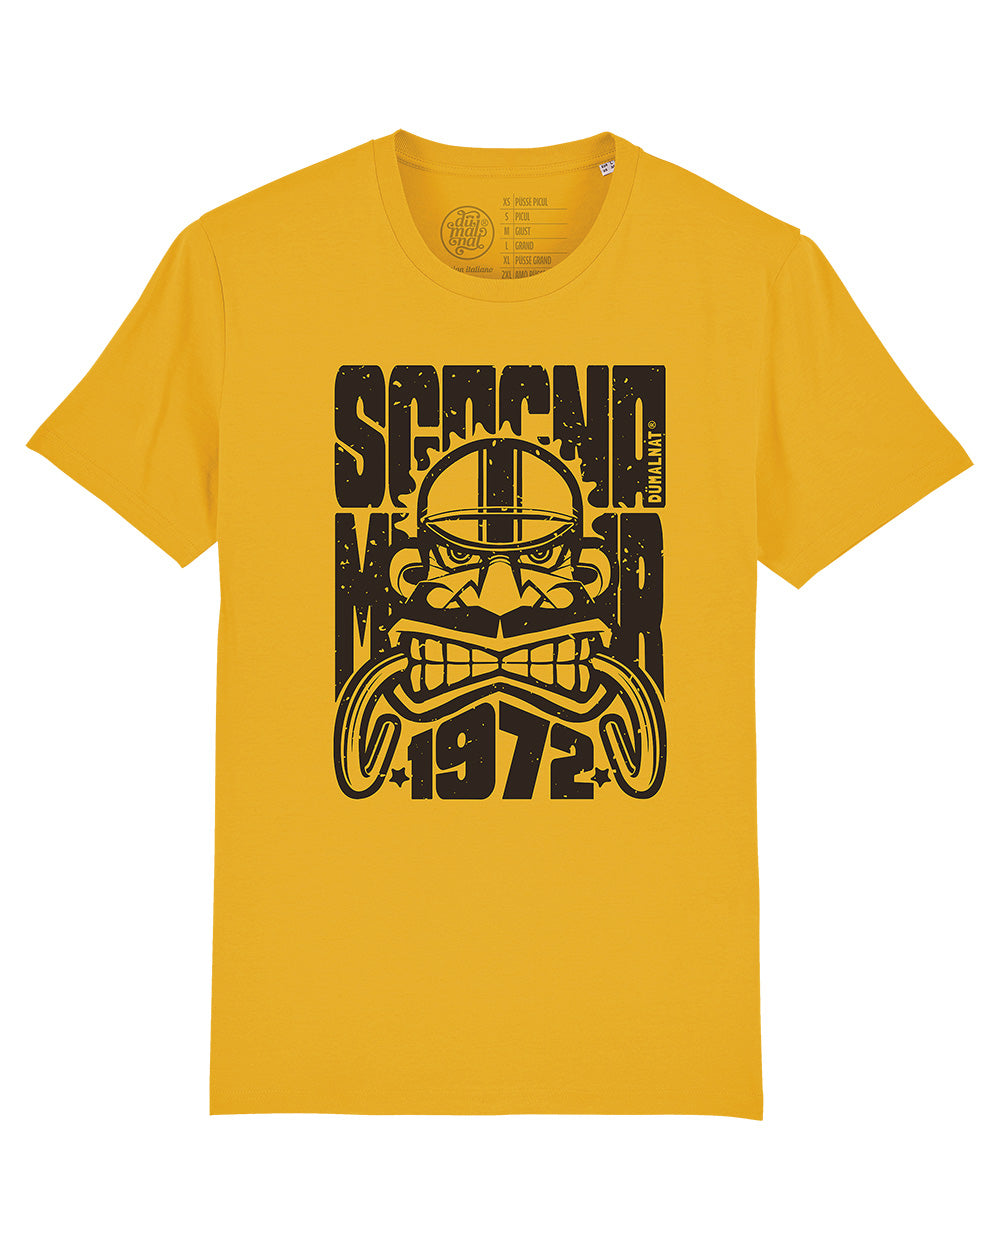 t-shirt "Sgagnamanüber" mod. 1972